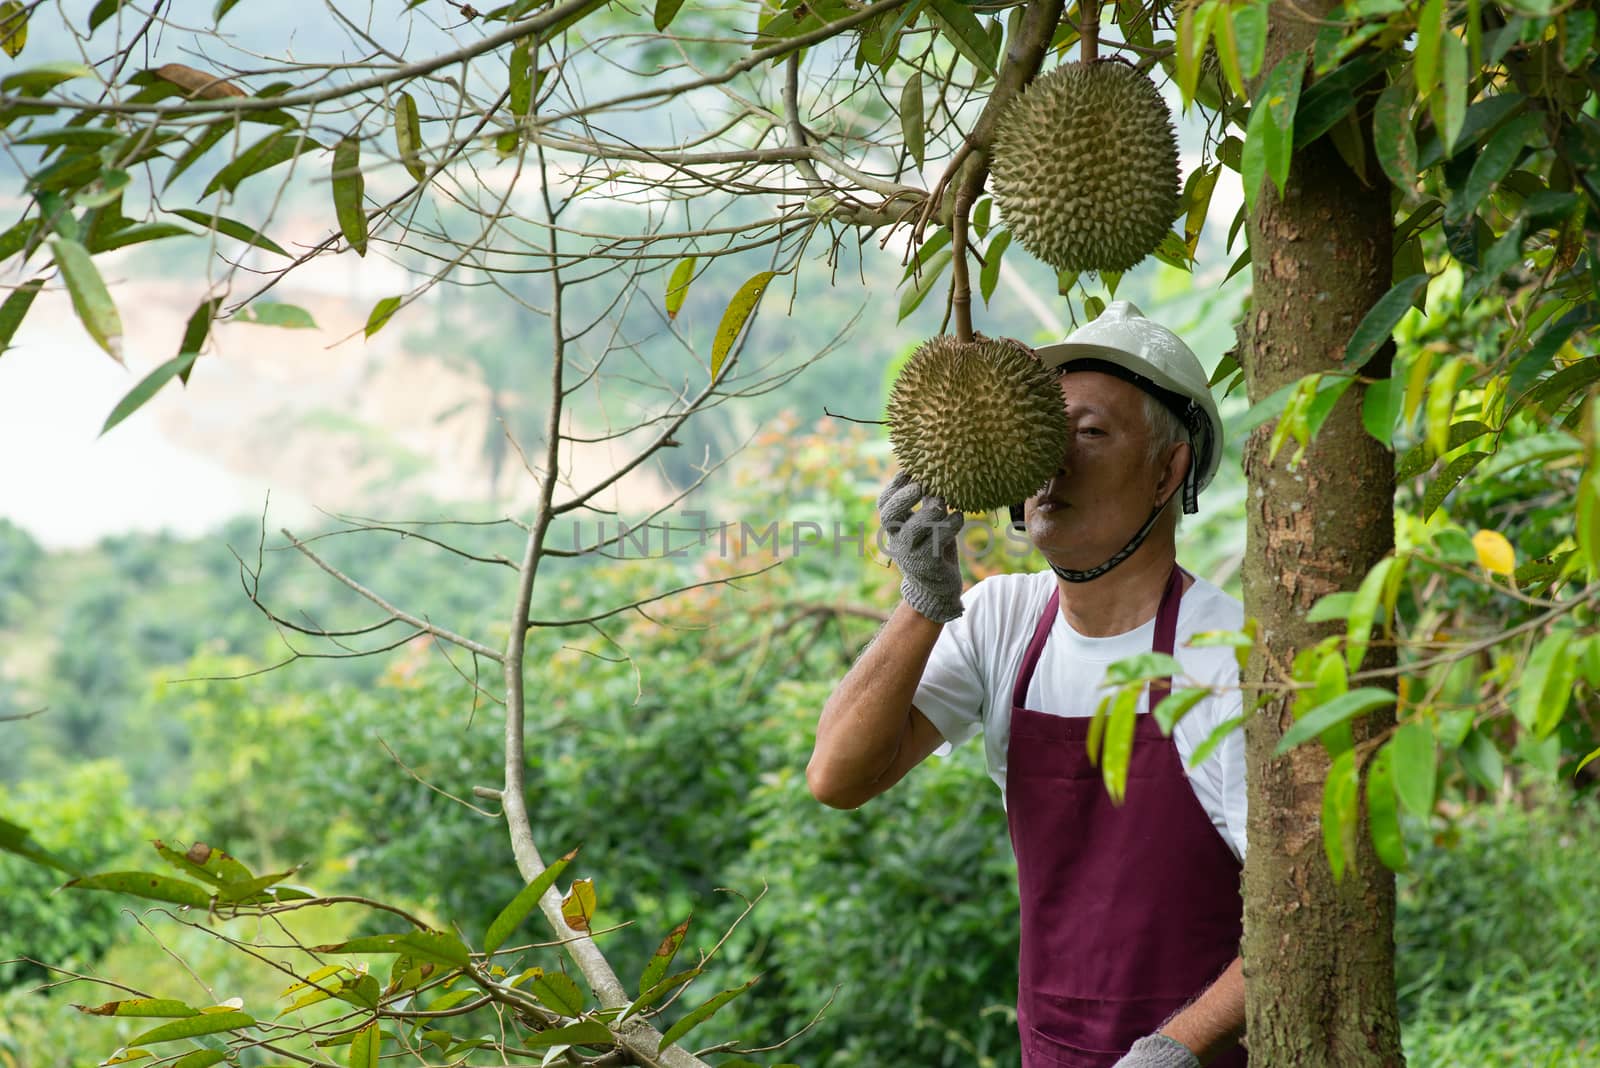 Farmer and Blackthorn durian tree. by szefei